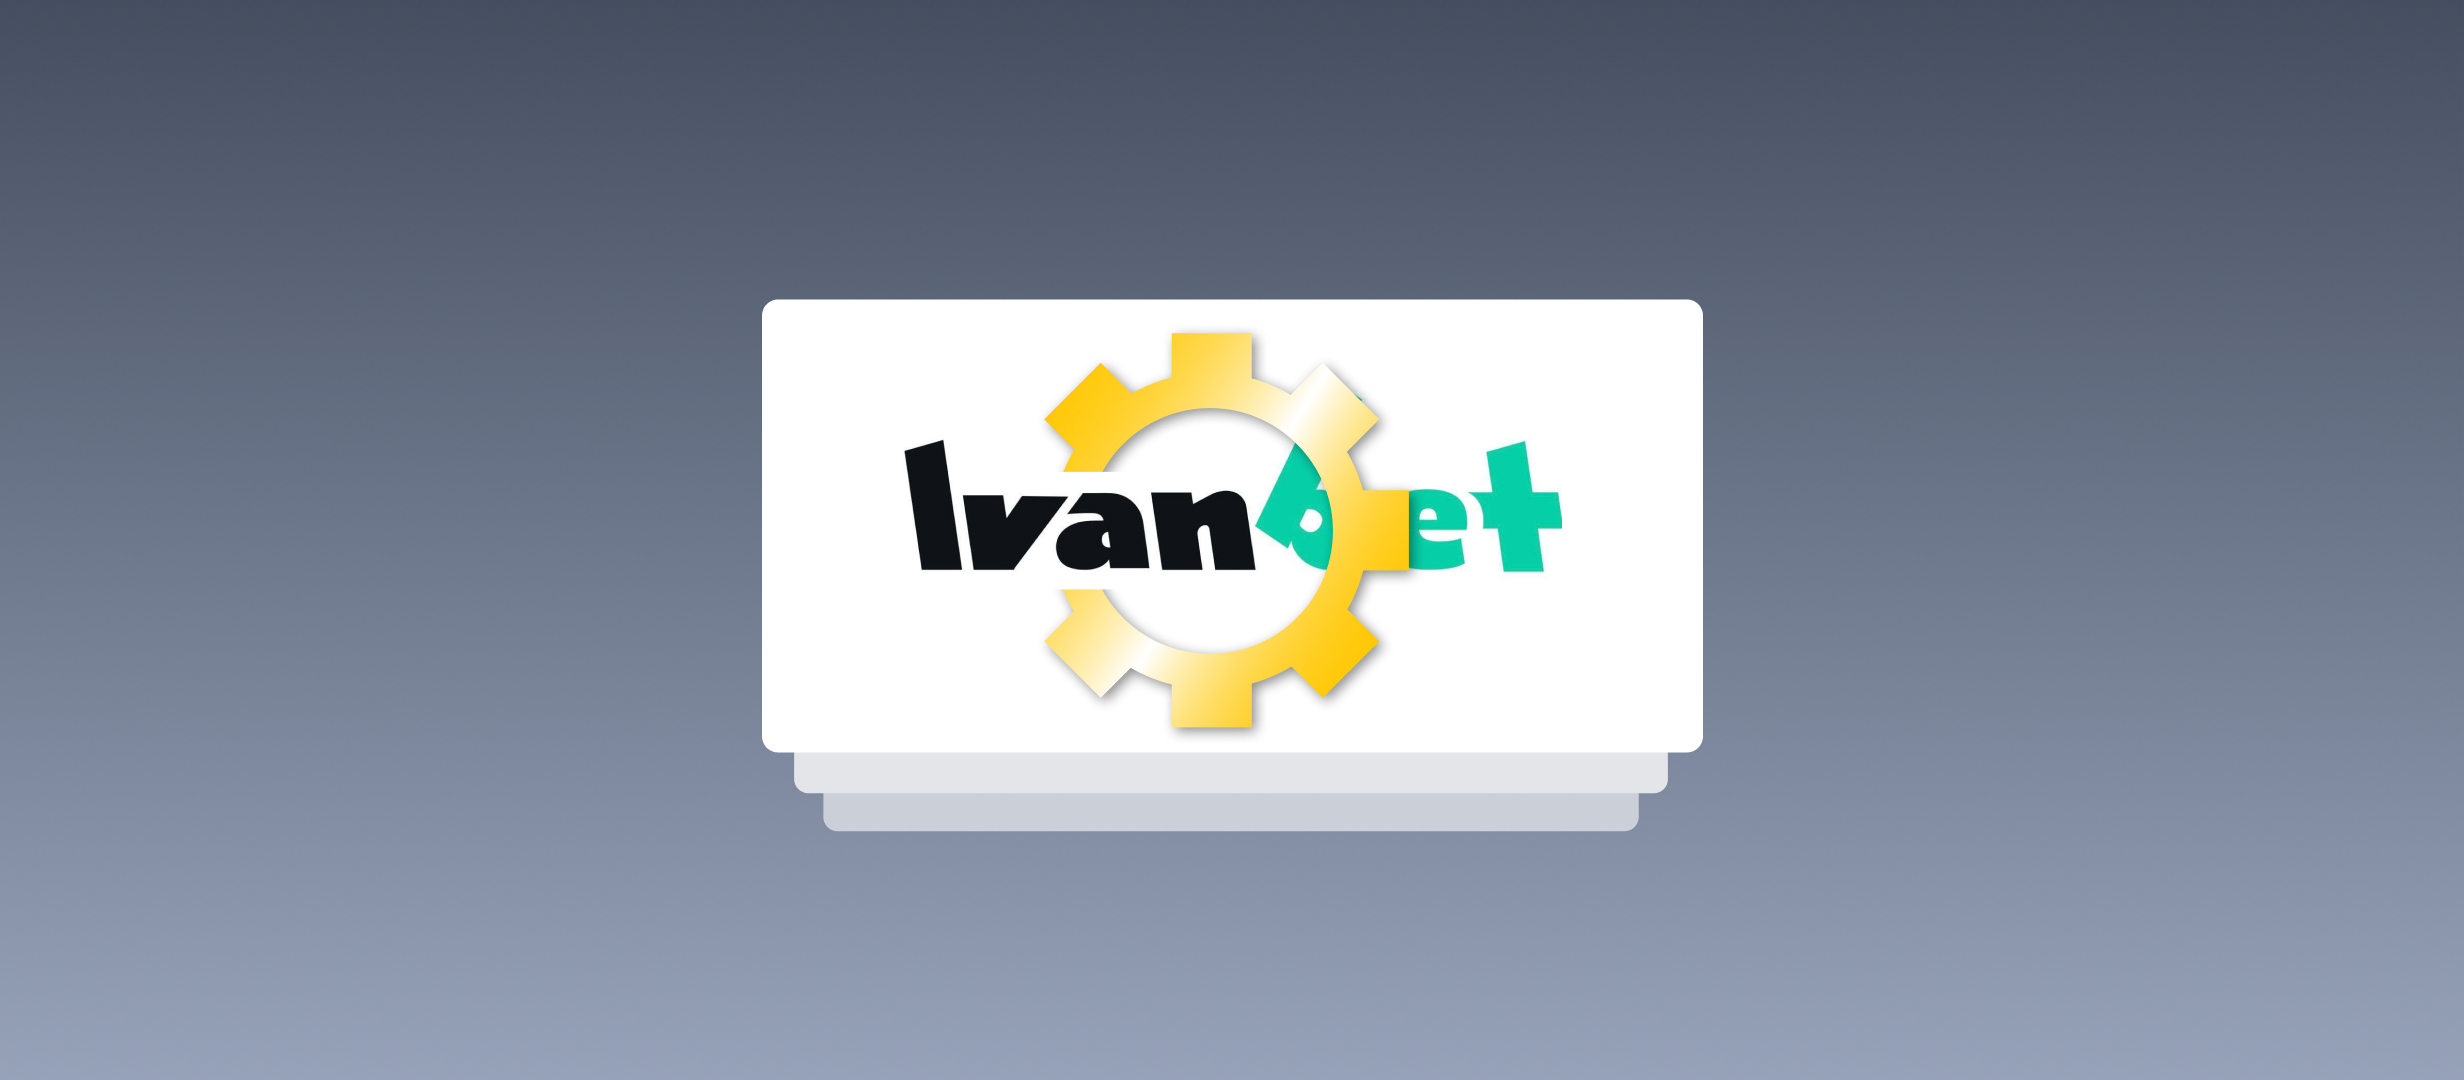 Сайт Ivanbet на технических работах. Лицензия переехала к «Фонбет»